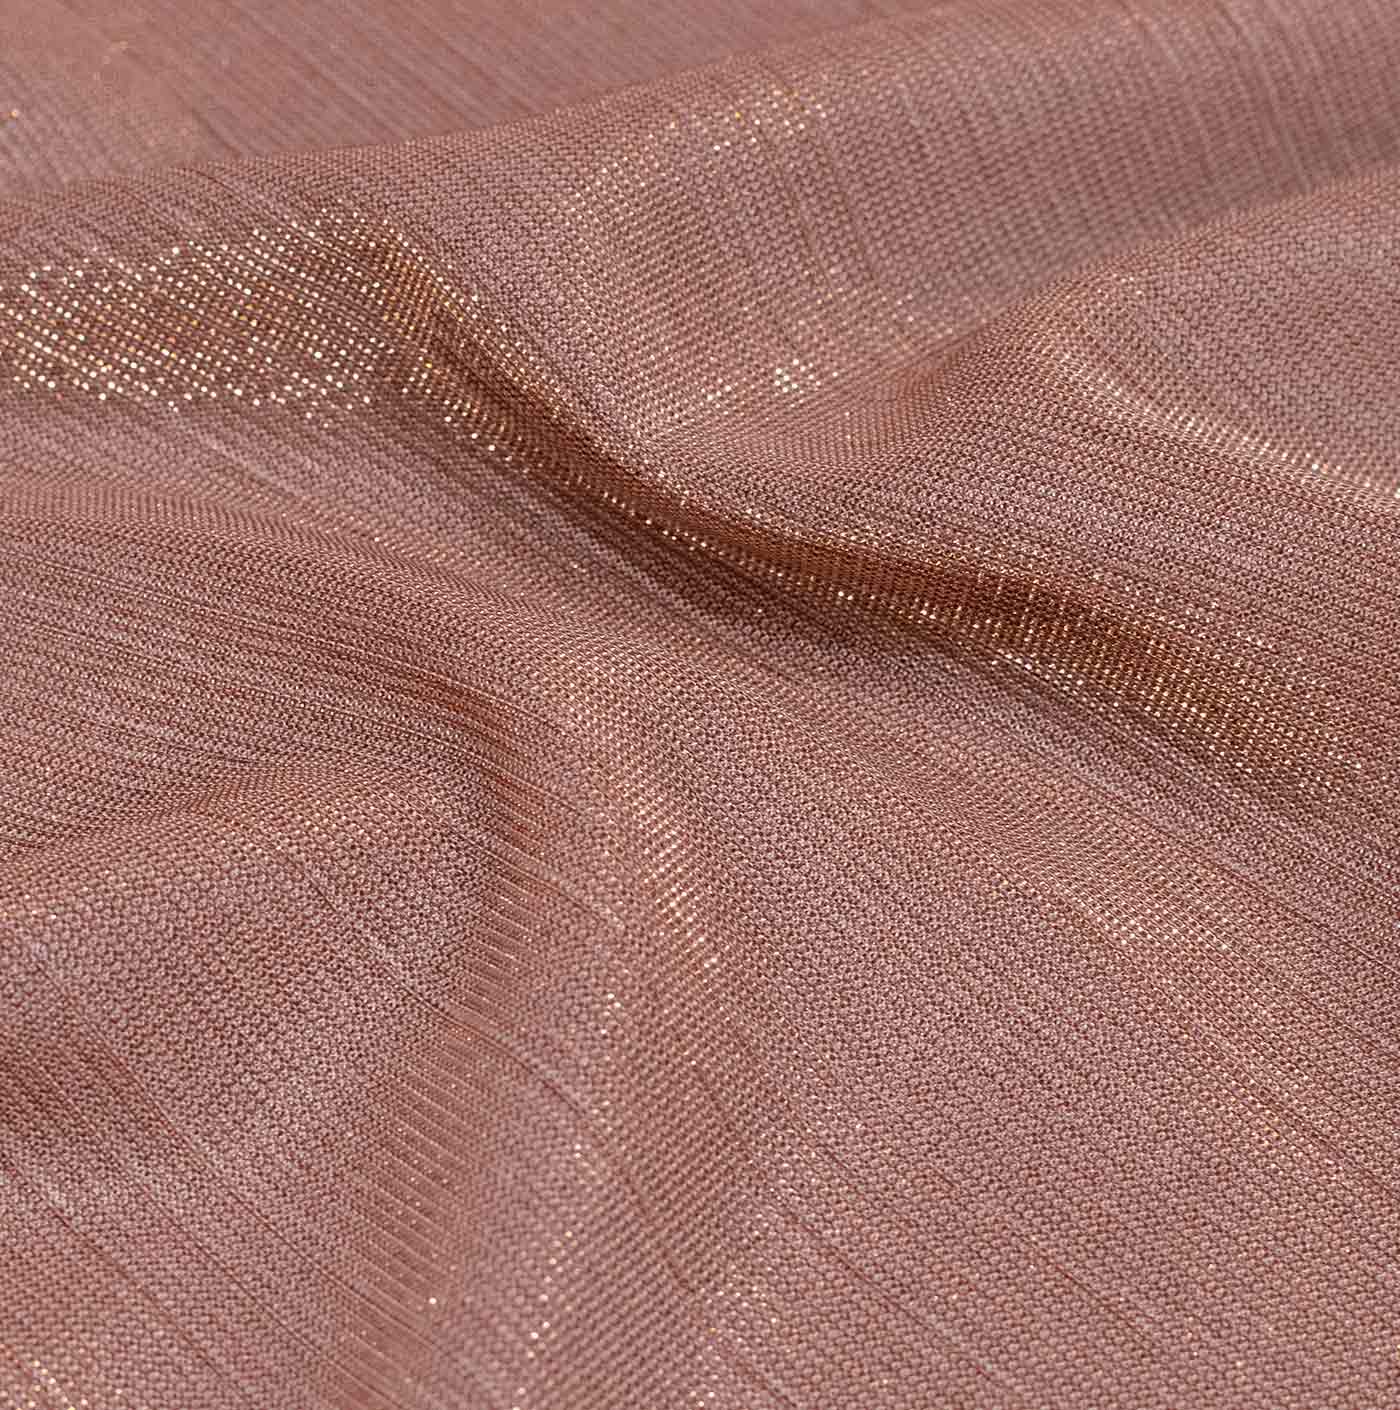 Nude Mesh Fabric